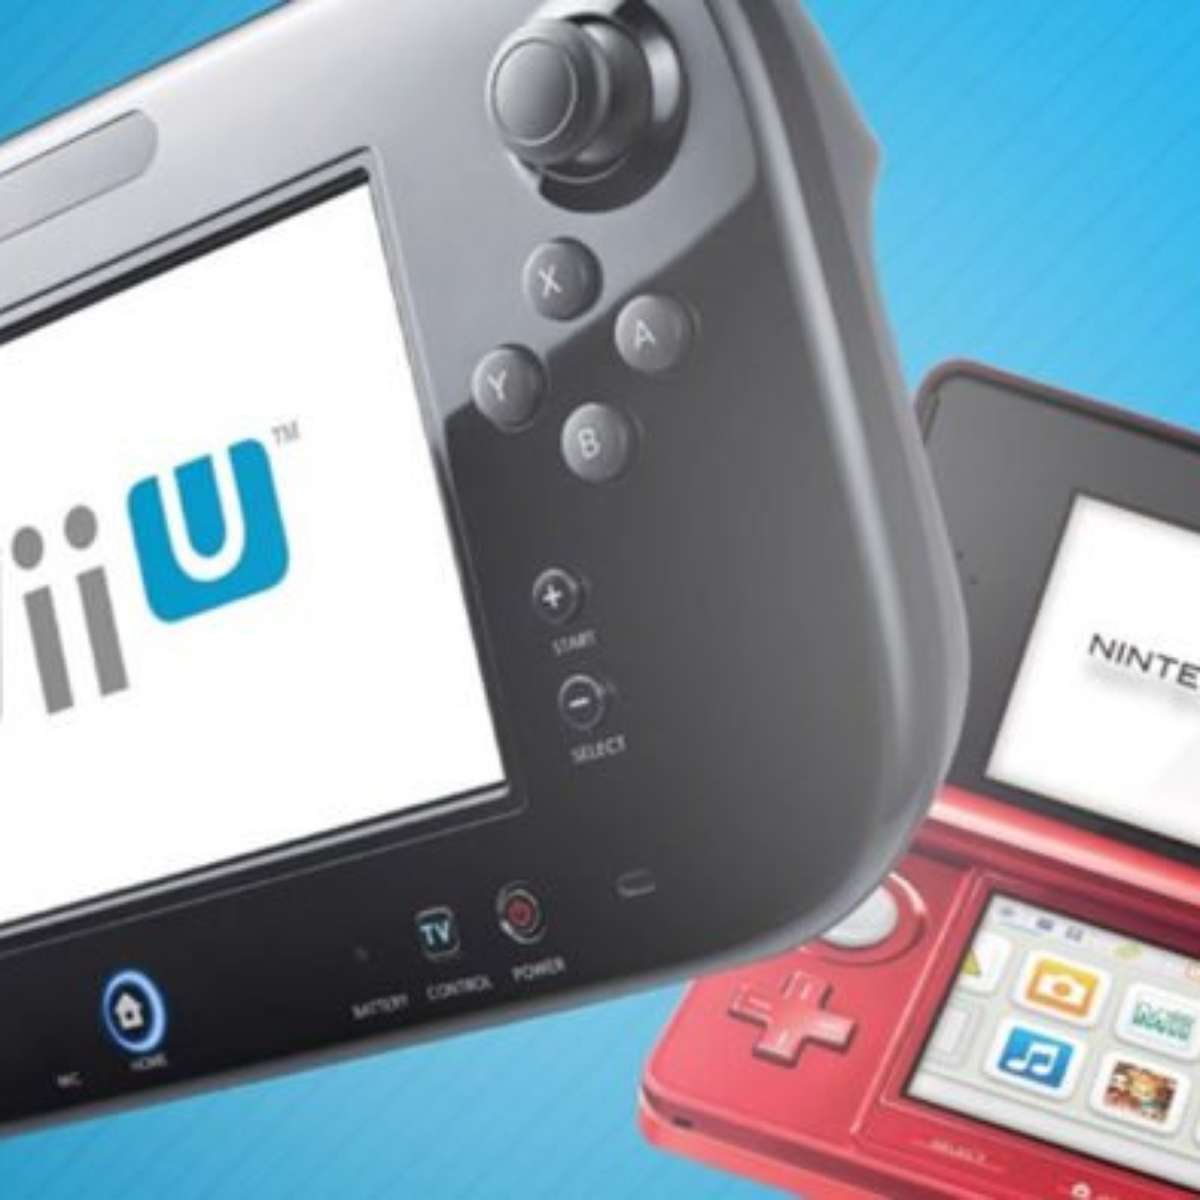 Conheça Nintendo Account e My Nintendo, novos serviços do Wii U e 3DS